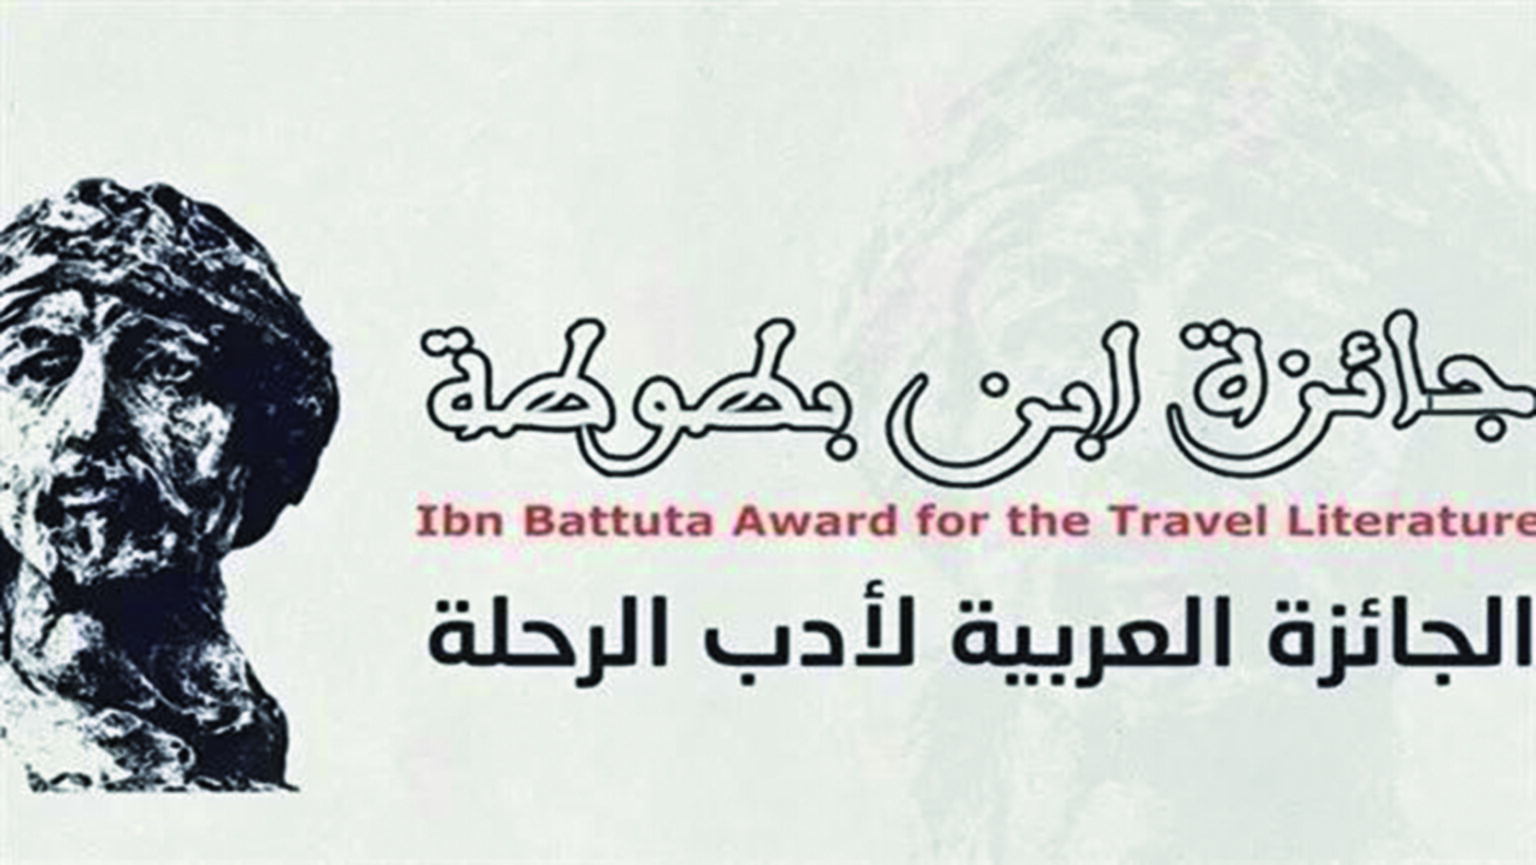 سناء الشعلان تفوز بجائزة ابن بطوطة لأدب الرحلة عن كتاب “الطريق إلى كريشنا”